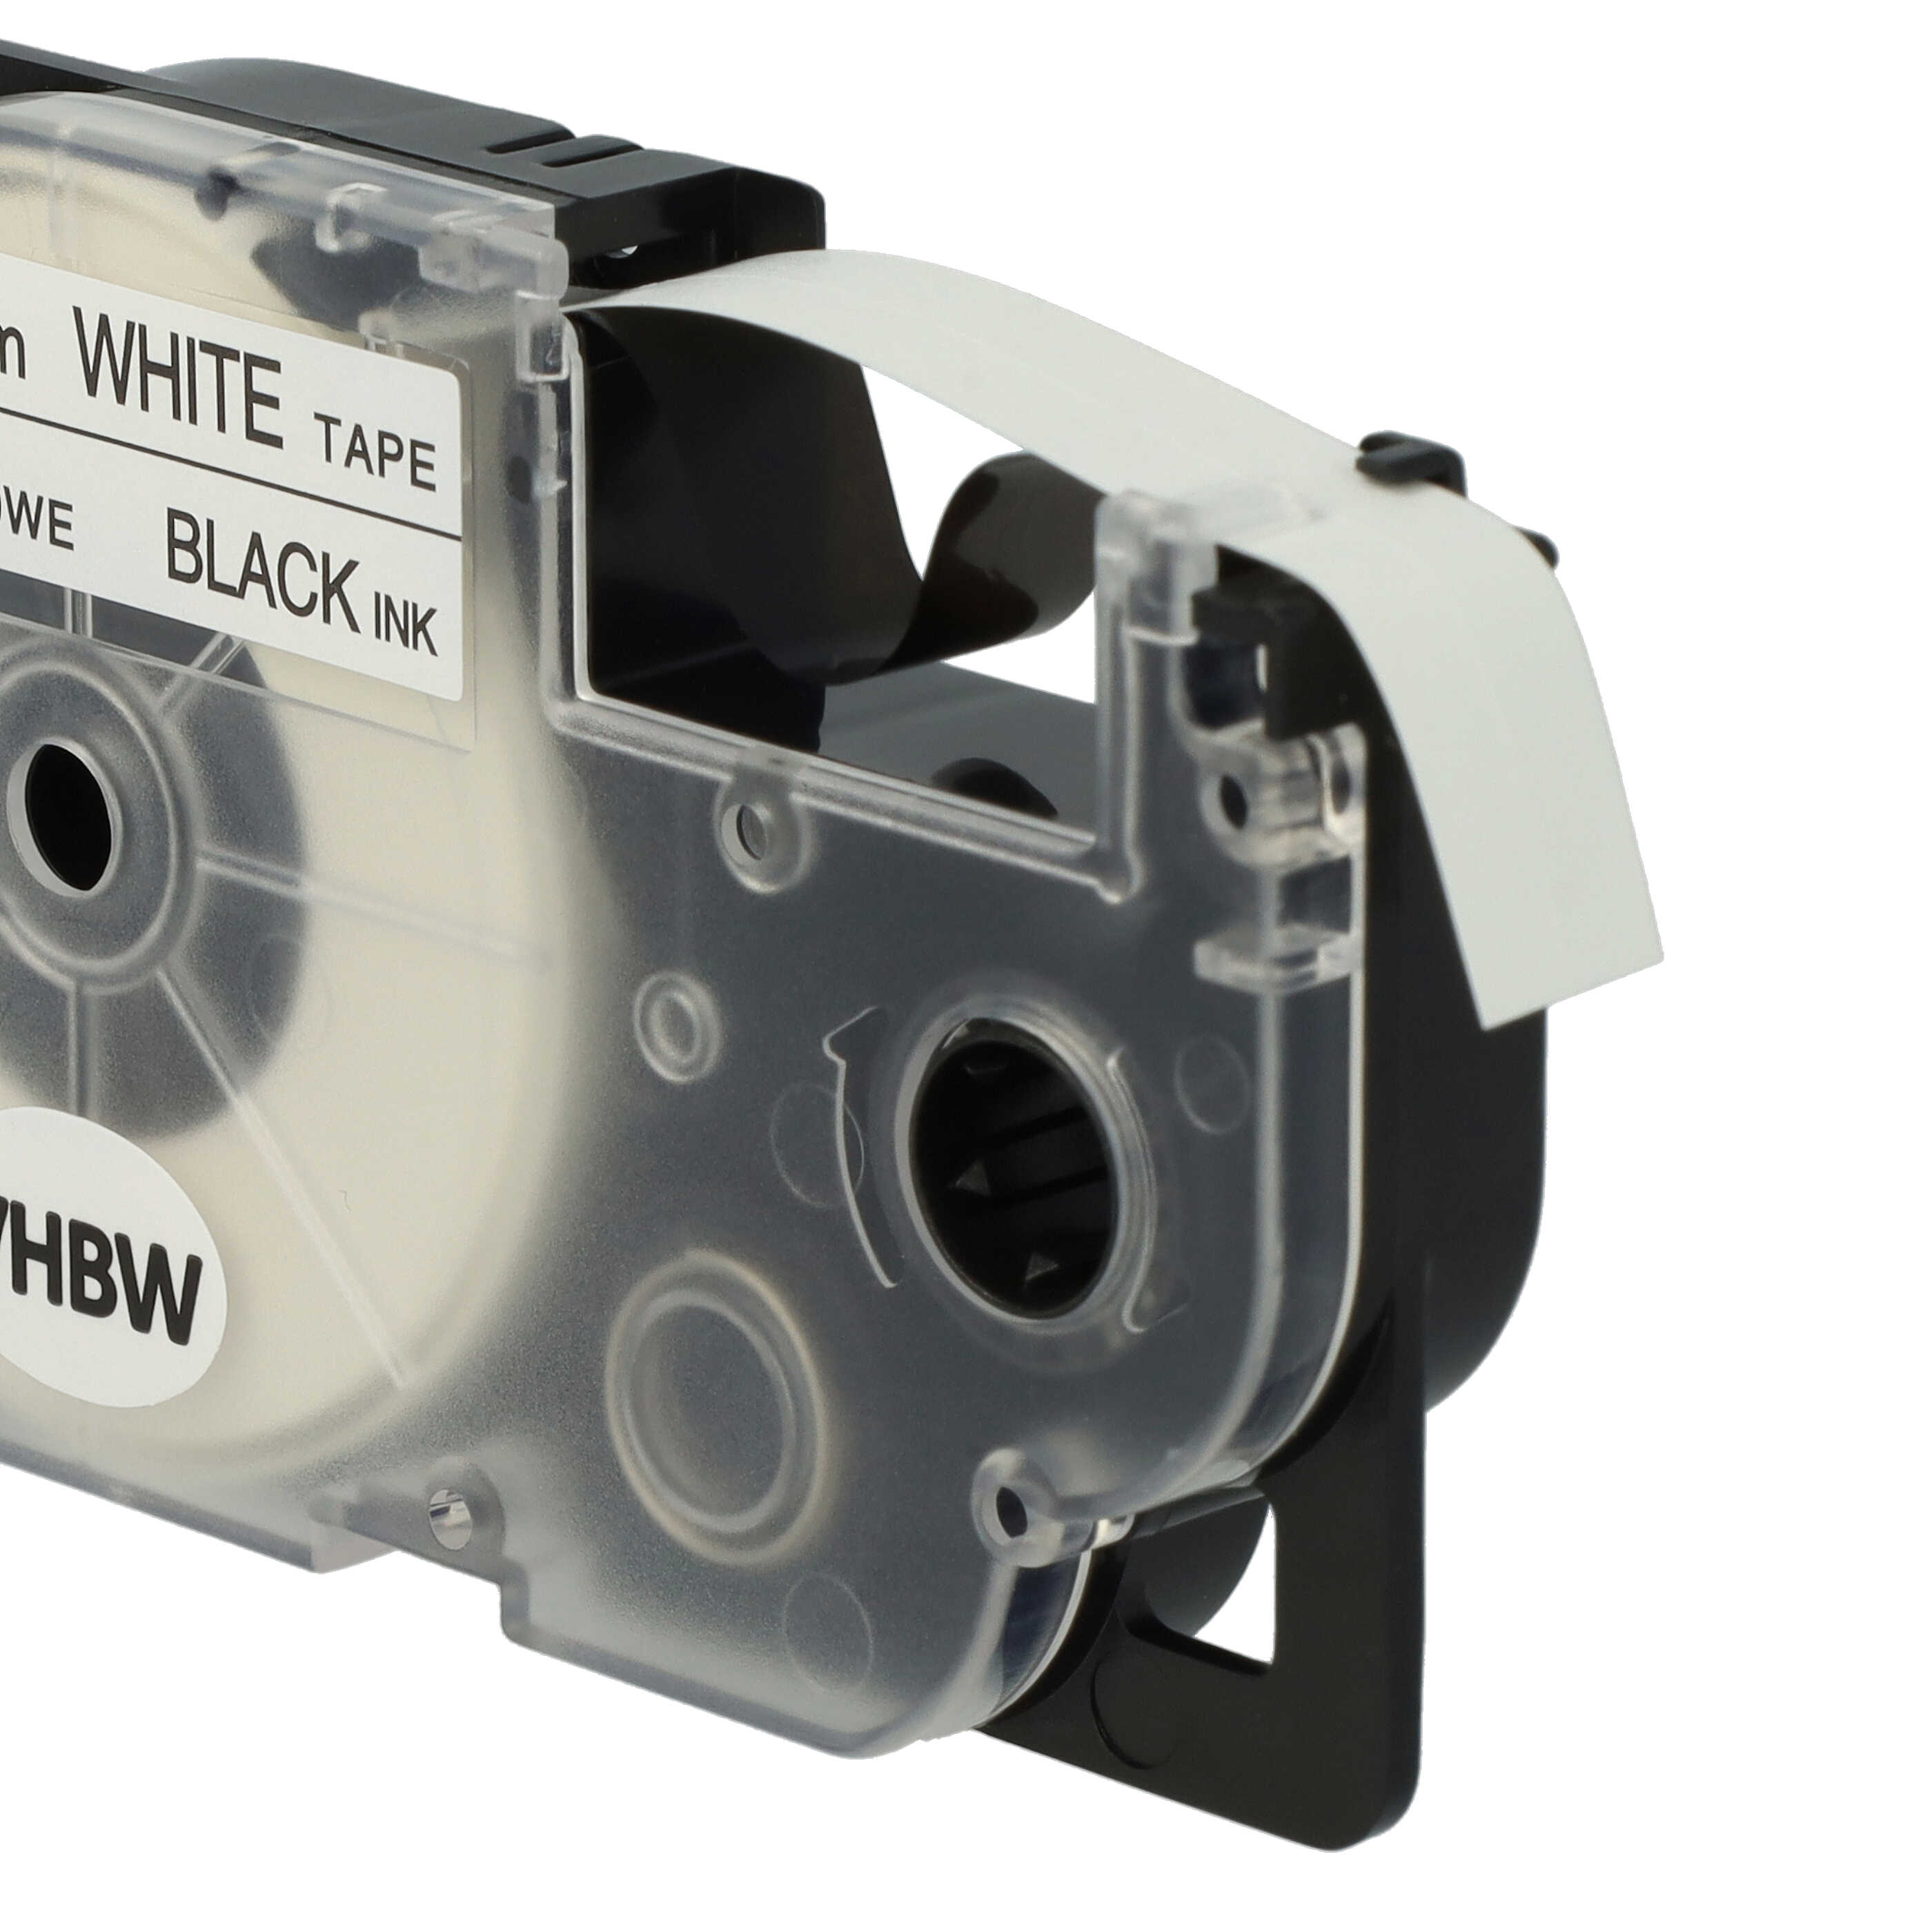 2x Casete cinta escritura reemplaza Casio XR-9WE1 Negro su Blanco